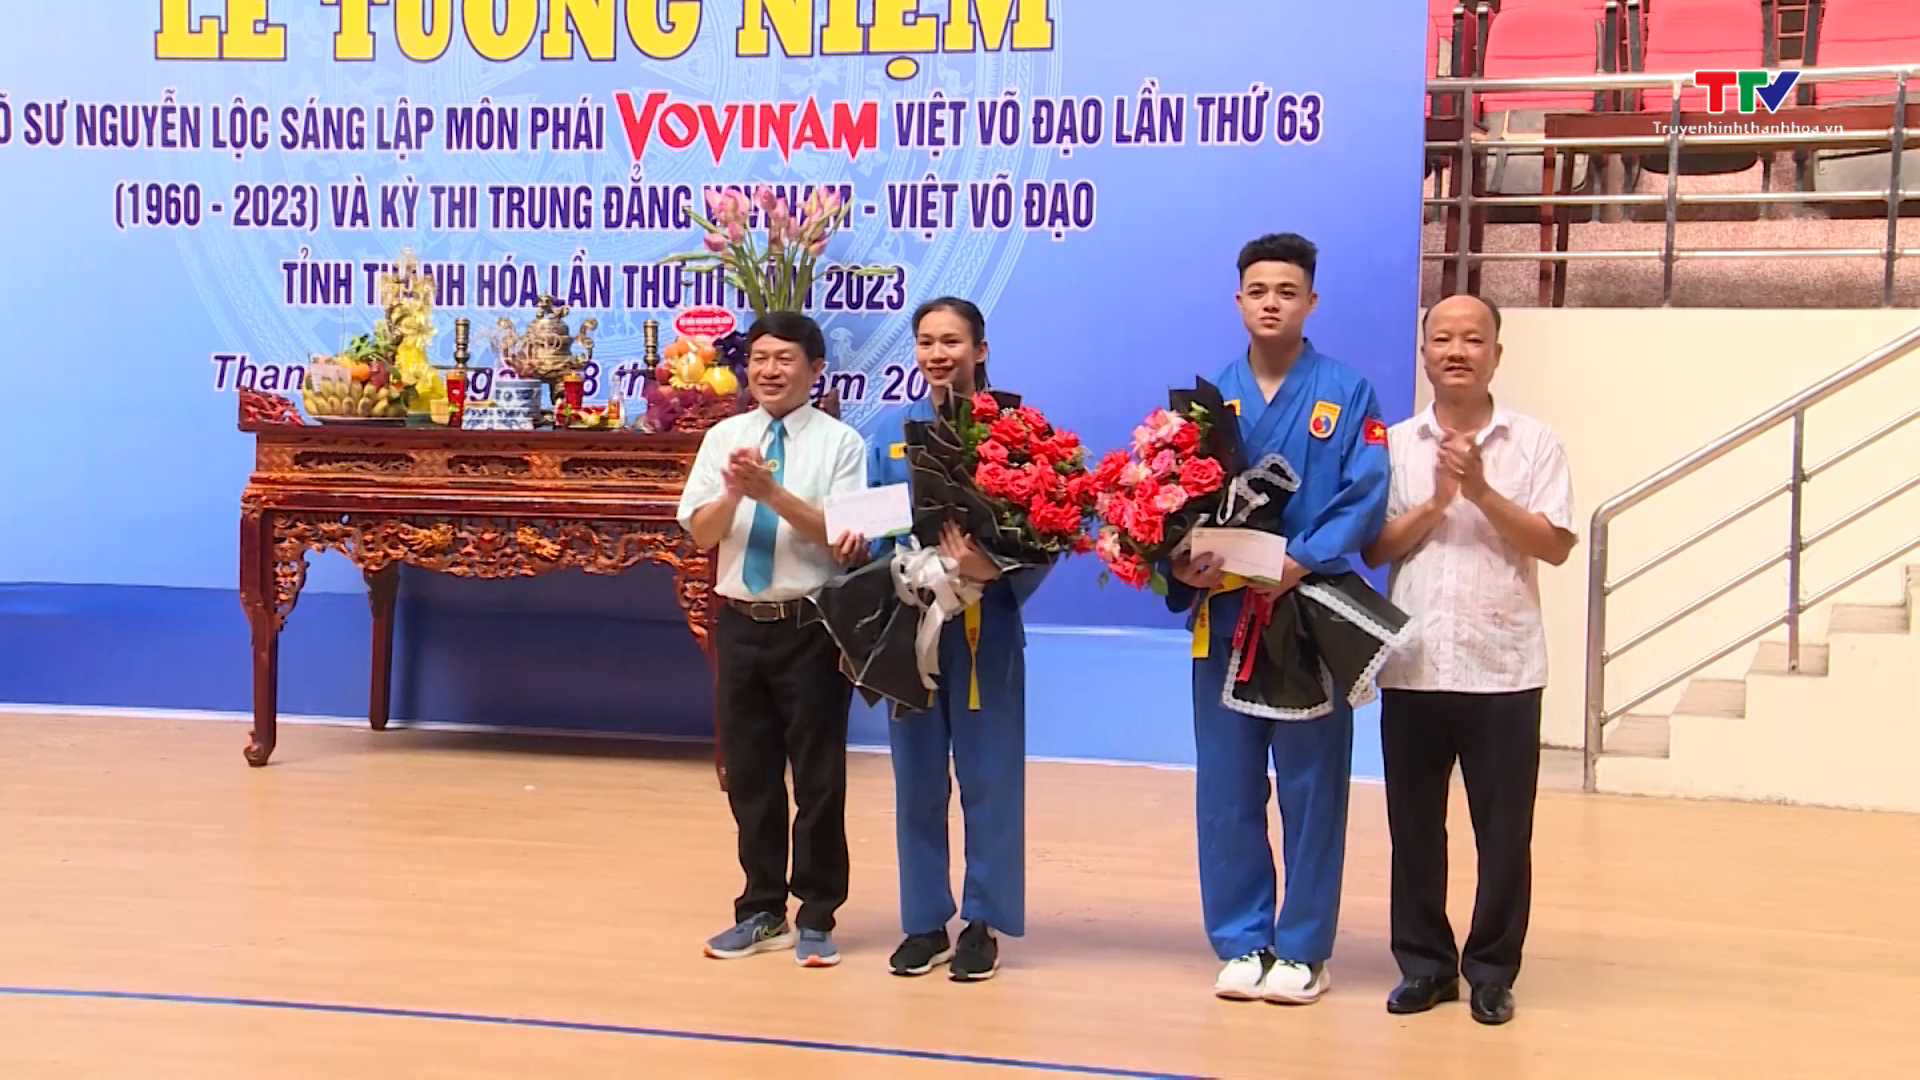 Liên đoàn Vovinam Thanh Hóa tưởng nhớ cố võ sư Nguyễn Lộc và trao giải cho các môn sinh - Ảnh 4.